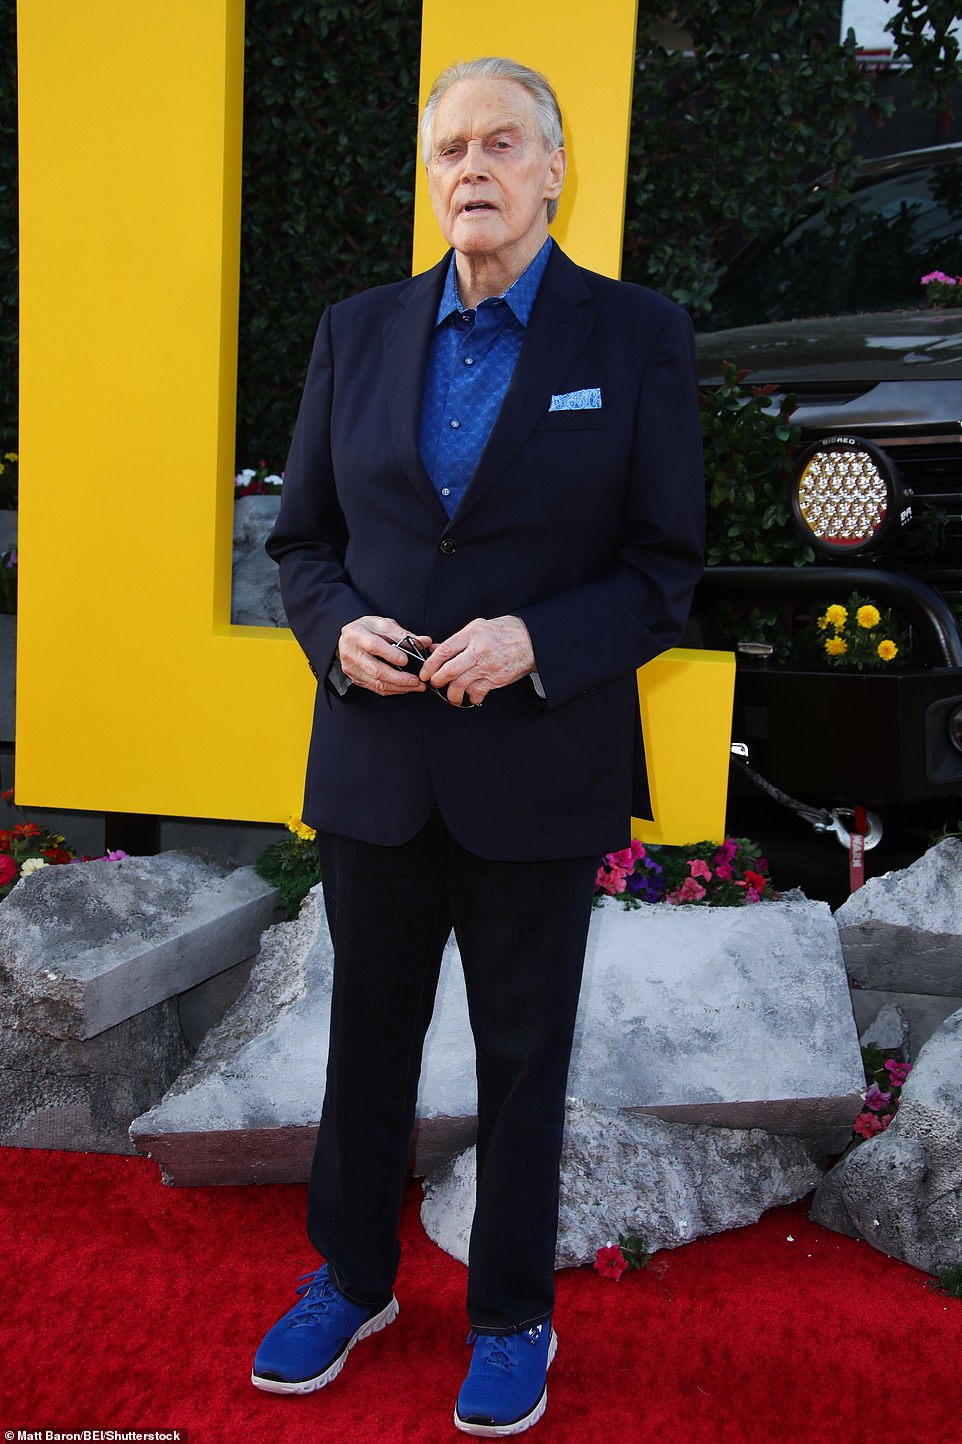 كان لي ماجورز، البالغ من العمر 85 عامًا، هو شخصية Fall Guy الأصلية في المسلسل التلفزيوني الذي استمر من عام 1981 إلى عام 1986.